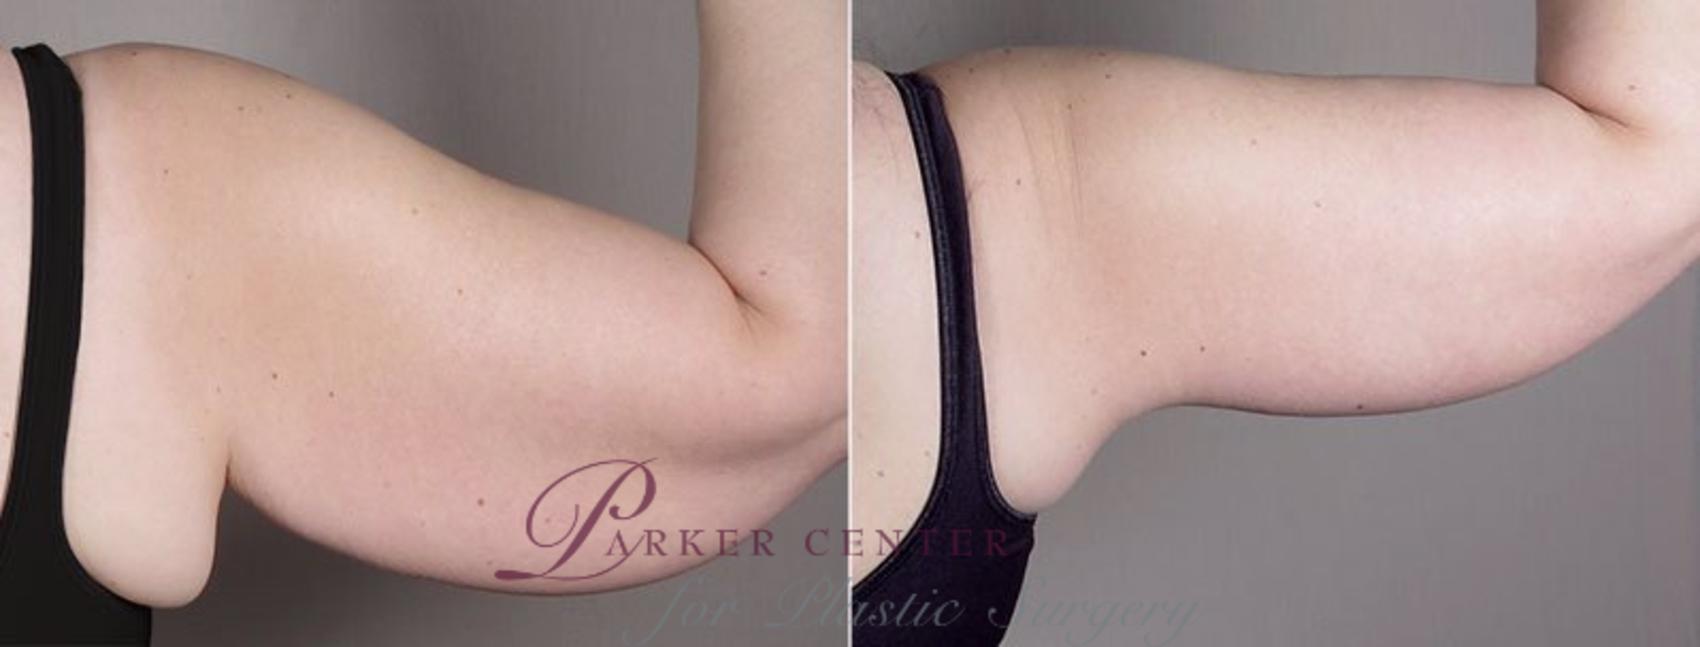 Upper Arm Rejuvenation Case 833 Before & After View #4 | Paramus, NJ | Parker Center for Plastic Surgery